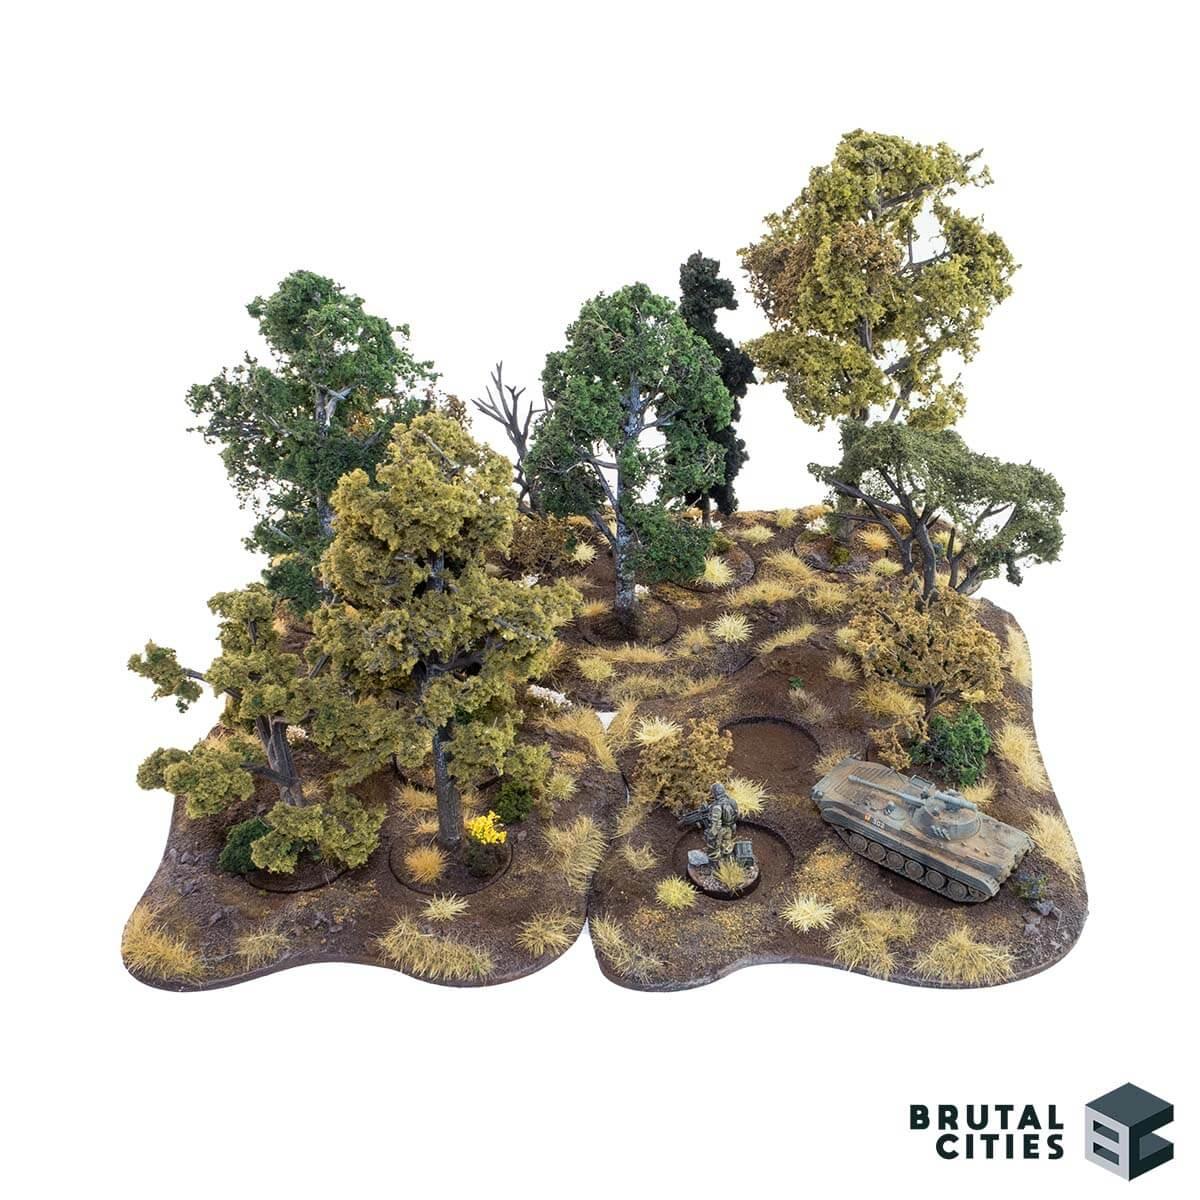 Woodland Scenics Tree Armatures - Tabletop Terrain Trees on MDF Base